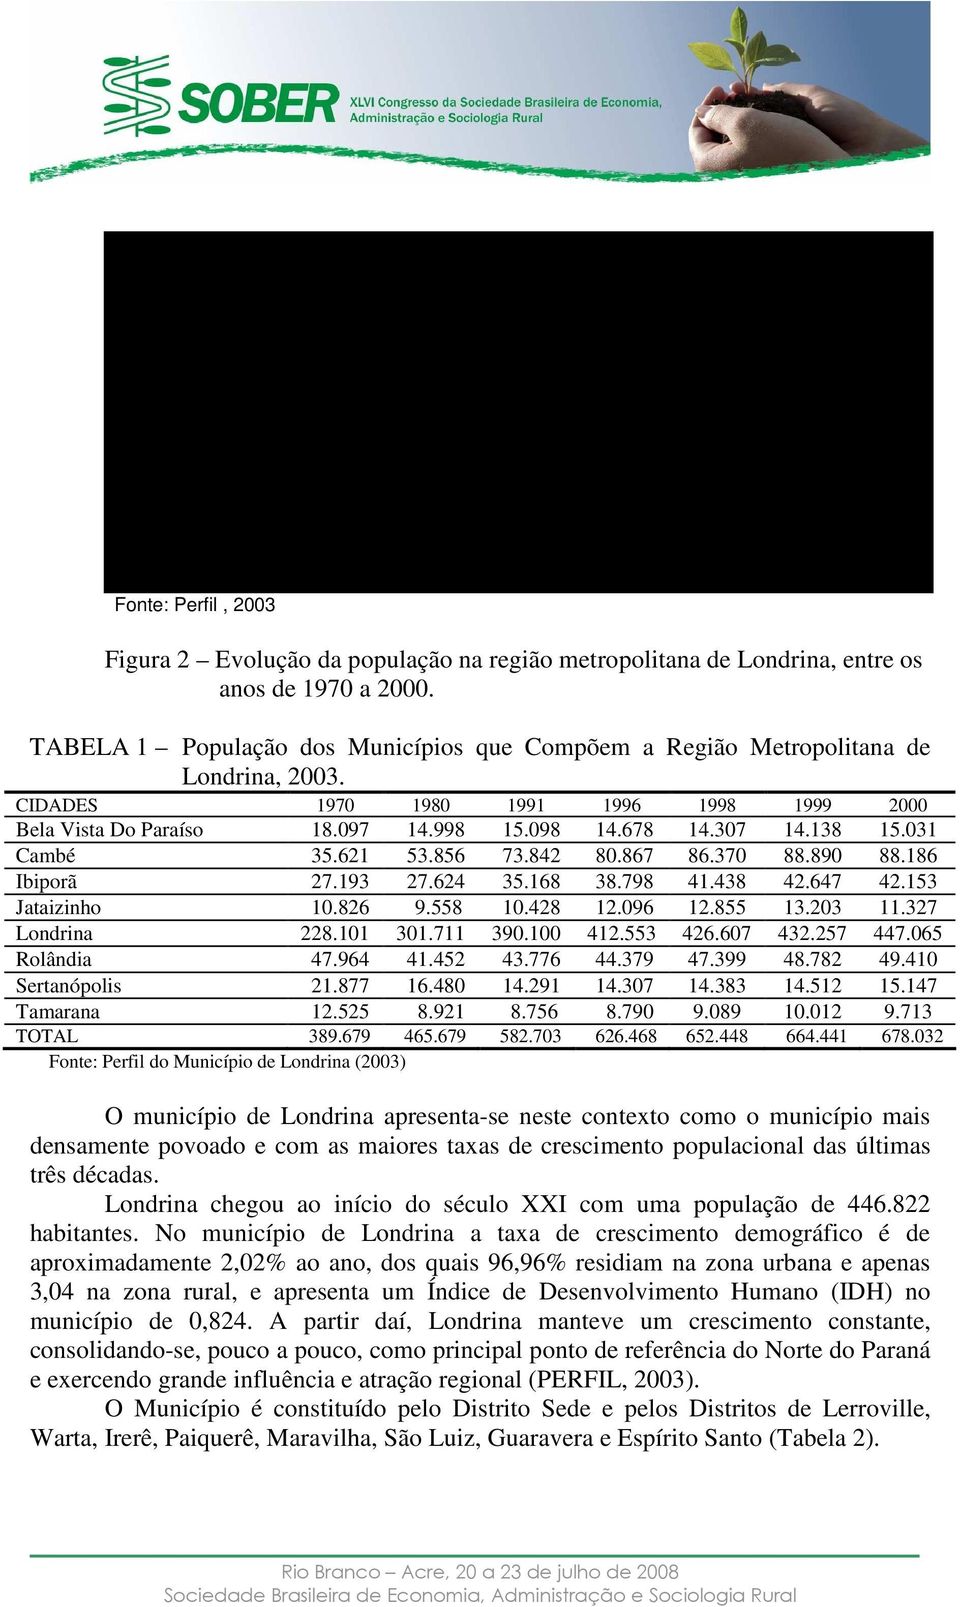 101 1970 1980 1991 1996 2000 2002 2003 Ano LONDRINA REGIÃO METROPOLITANA Fonte: Perfil, 2003 Figura 2 Evolução da população na região metropolitana de Londrina, entre os anos de 1970 a 2000.